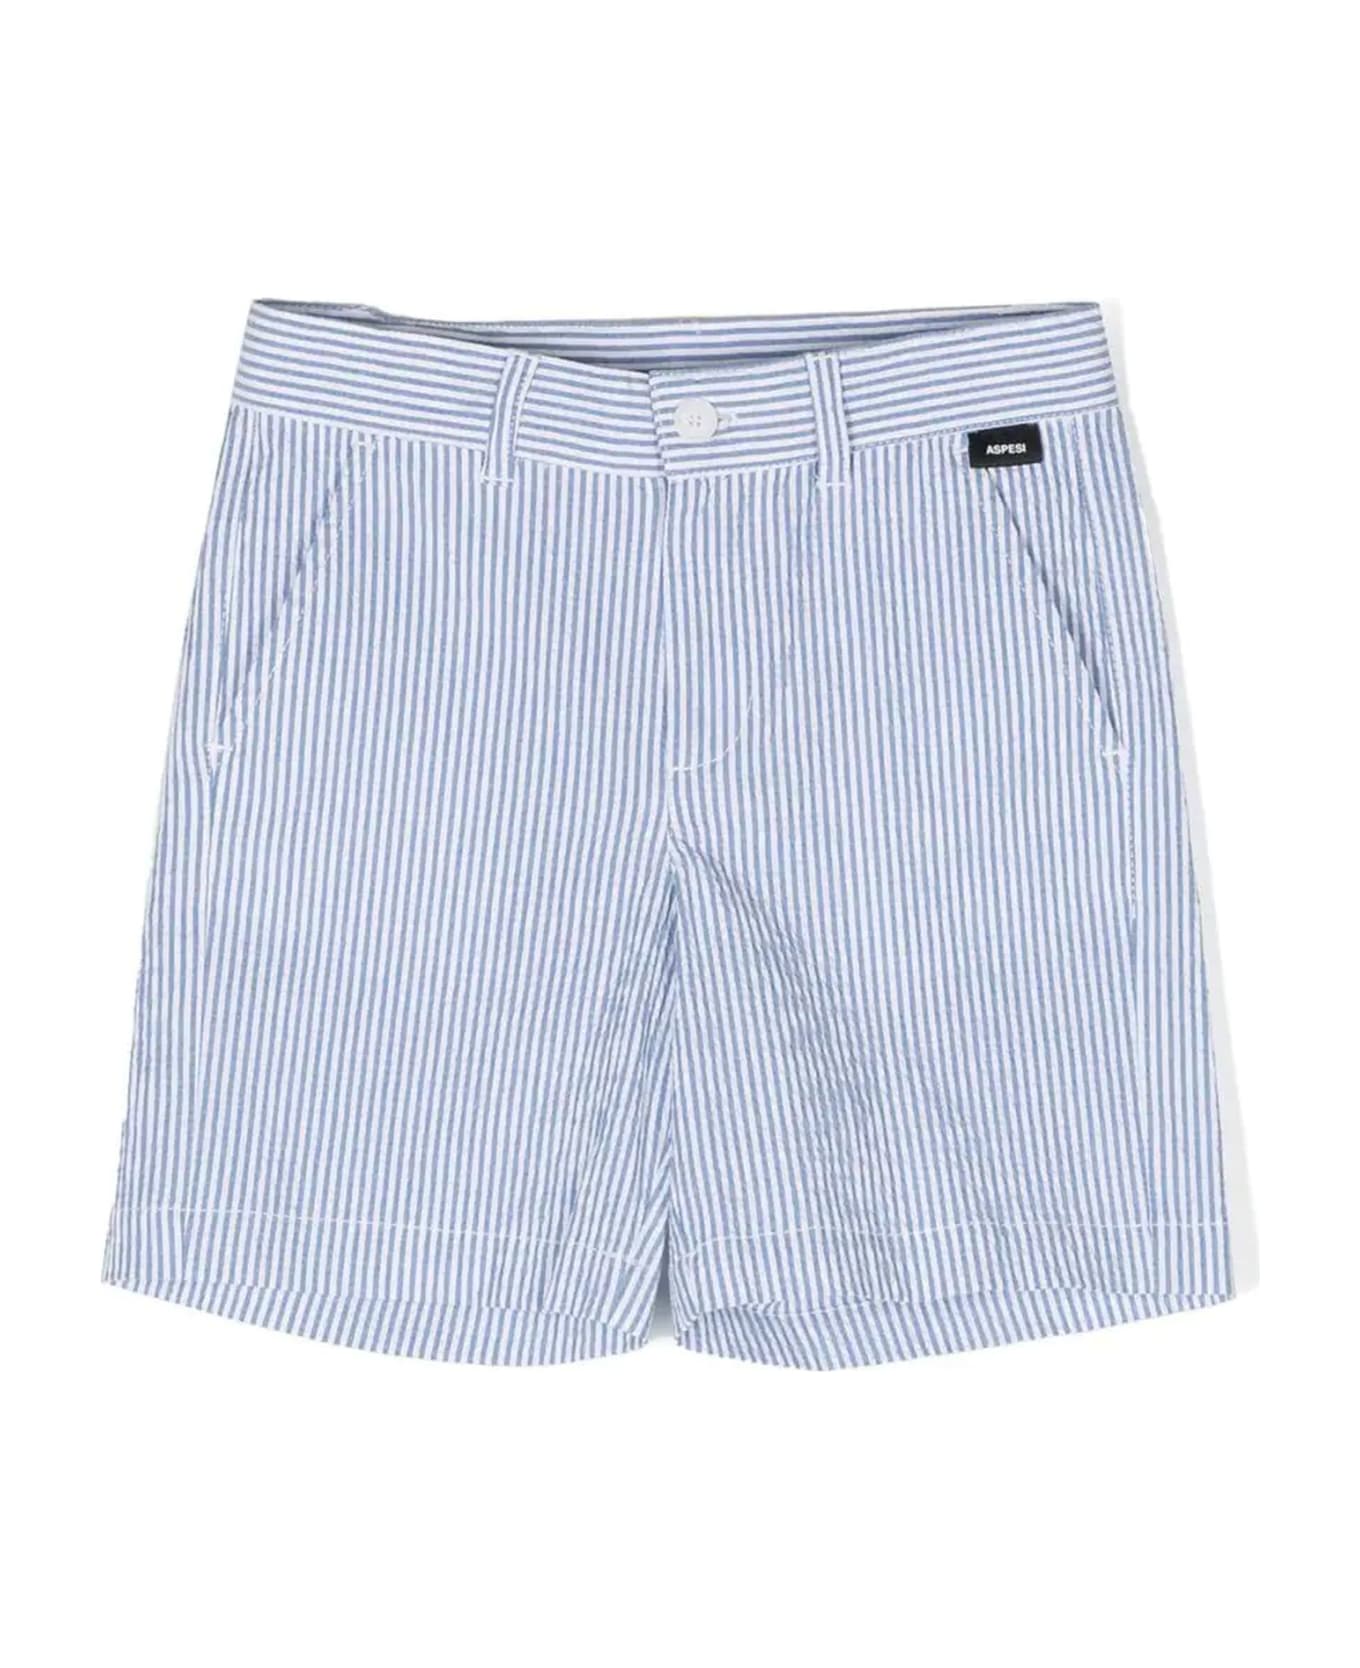 Aspesi Shorts - Bianco+azzurro ボトムス